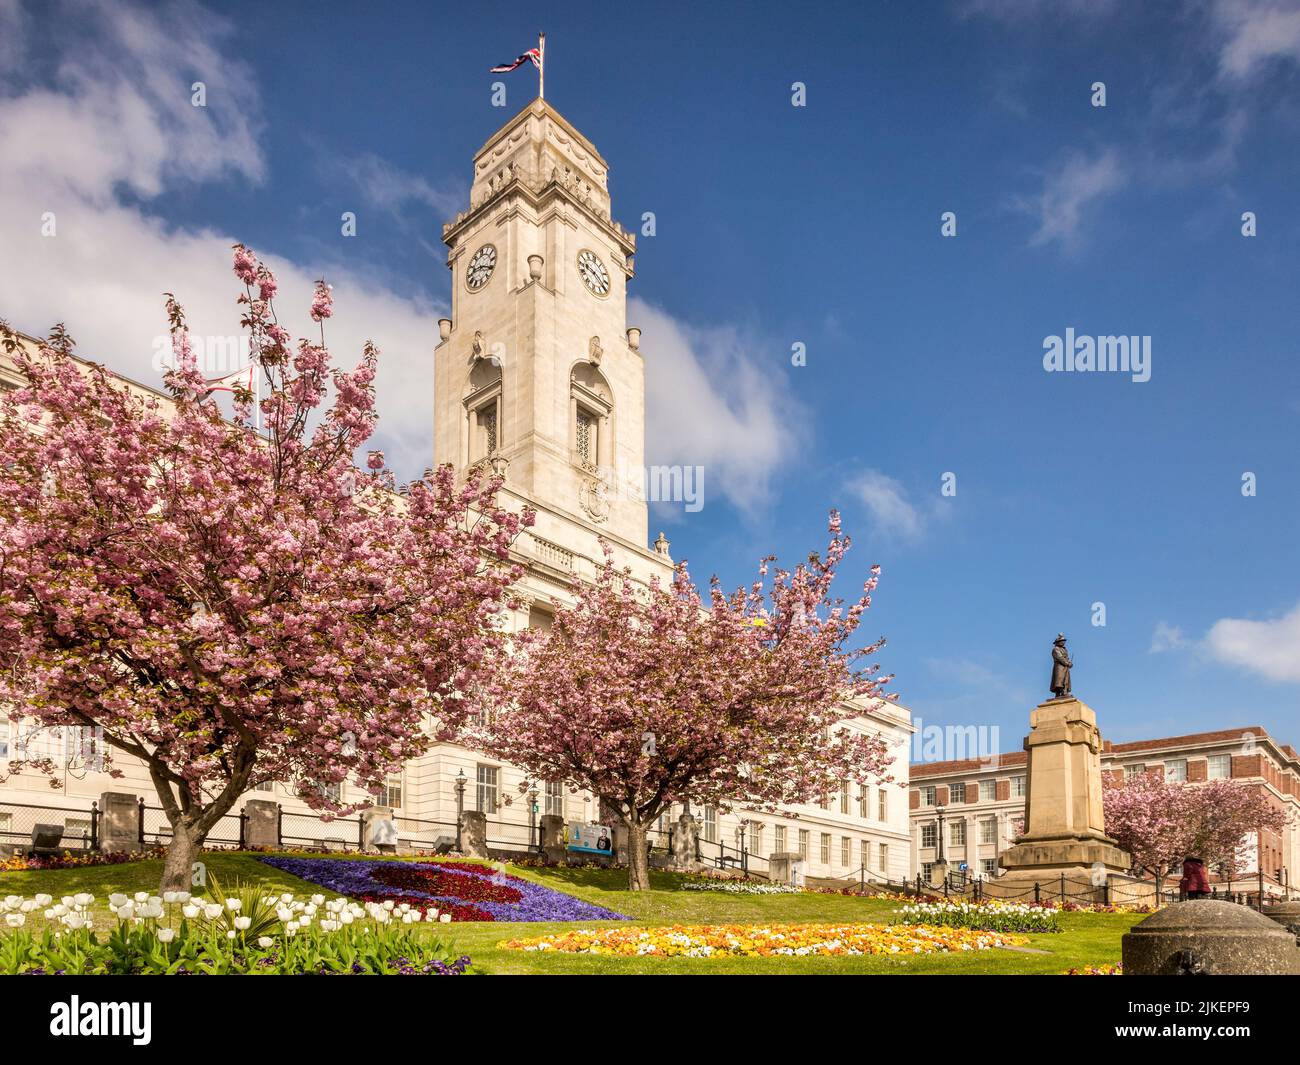 24 avril 2022 : Barnsley, Yorkshire du Sud - Barnsley Town Hall lors d'une belle journée de printemps, avec un ciel bleu et des jardins fleuris. Banque D'Images